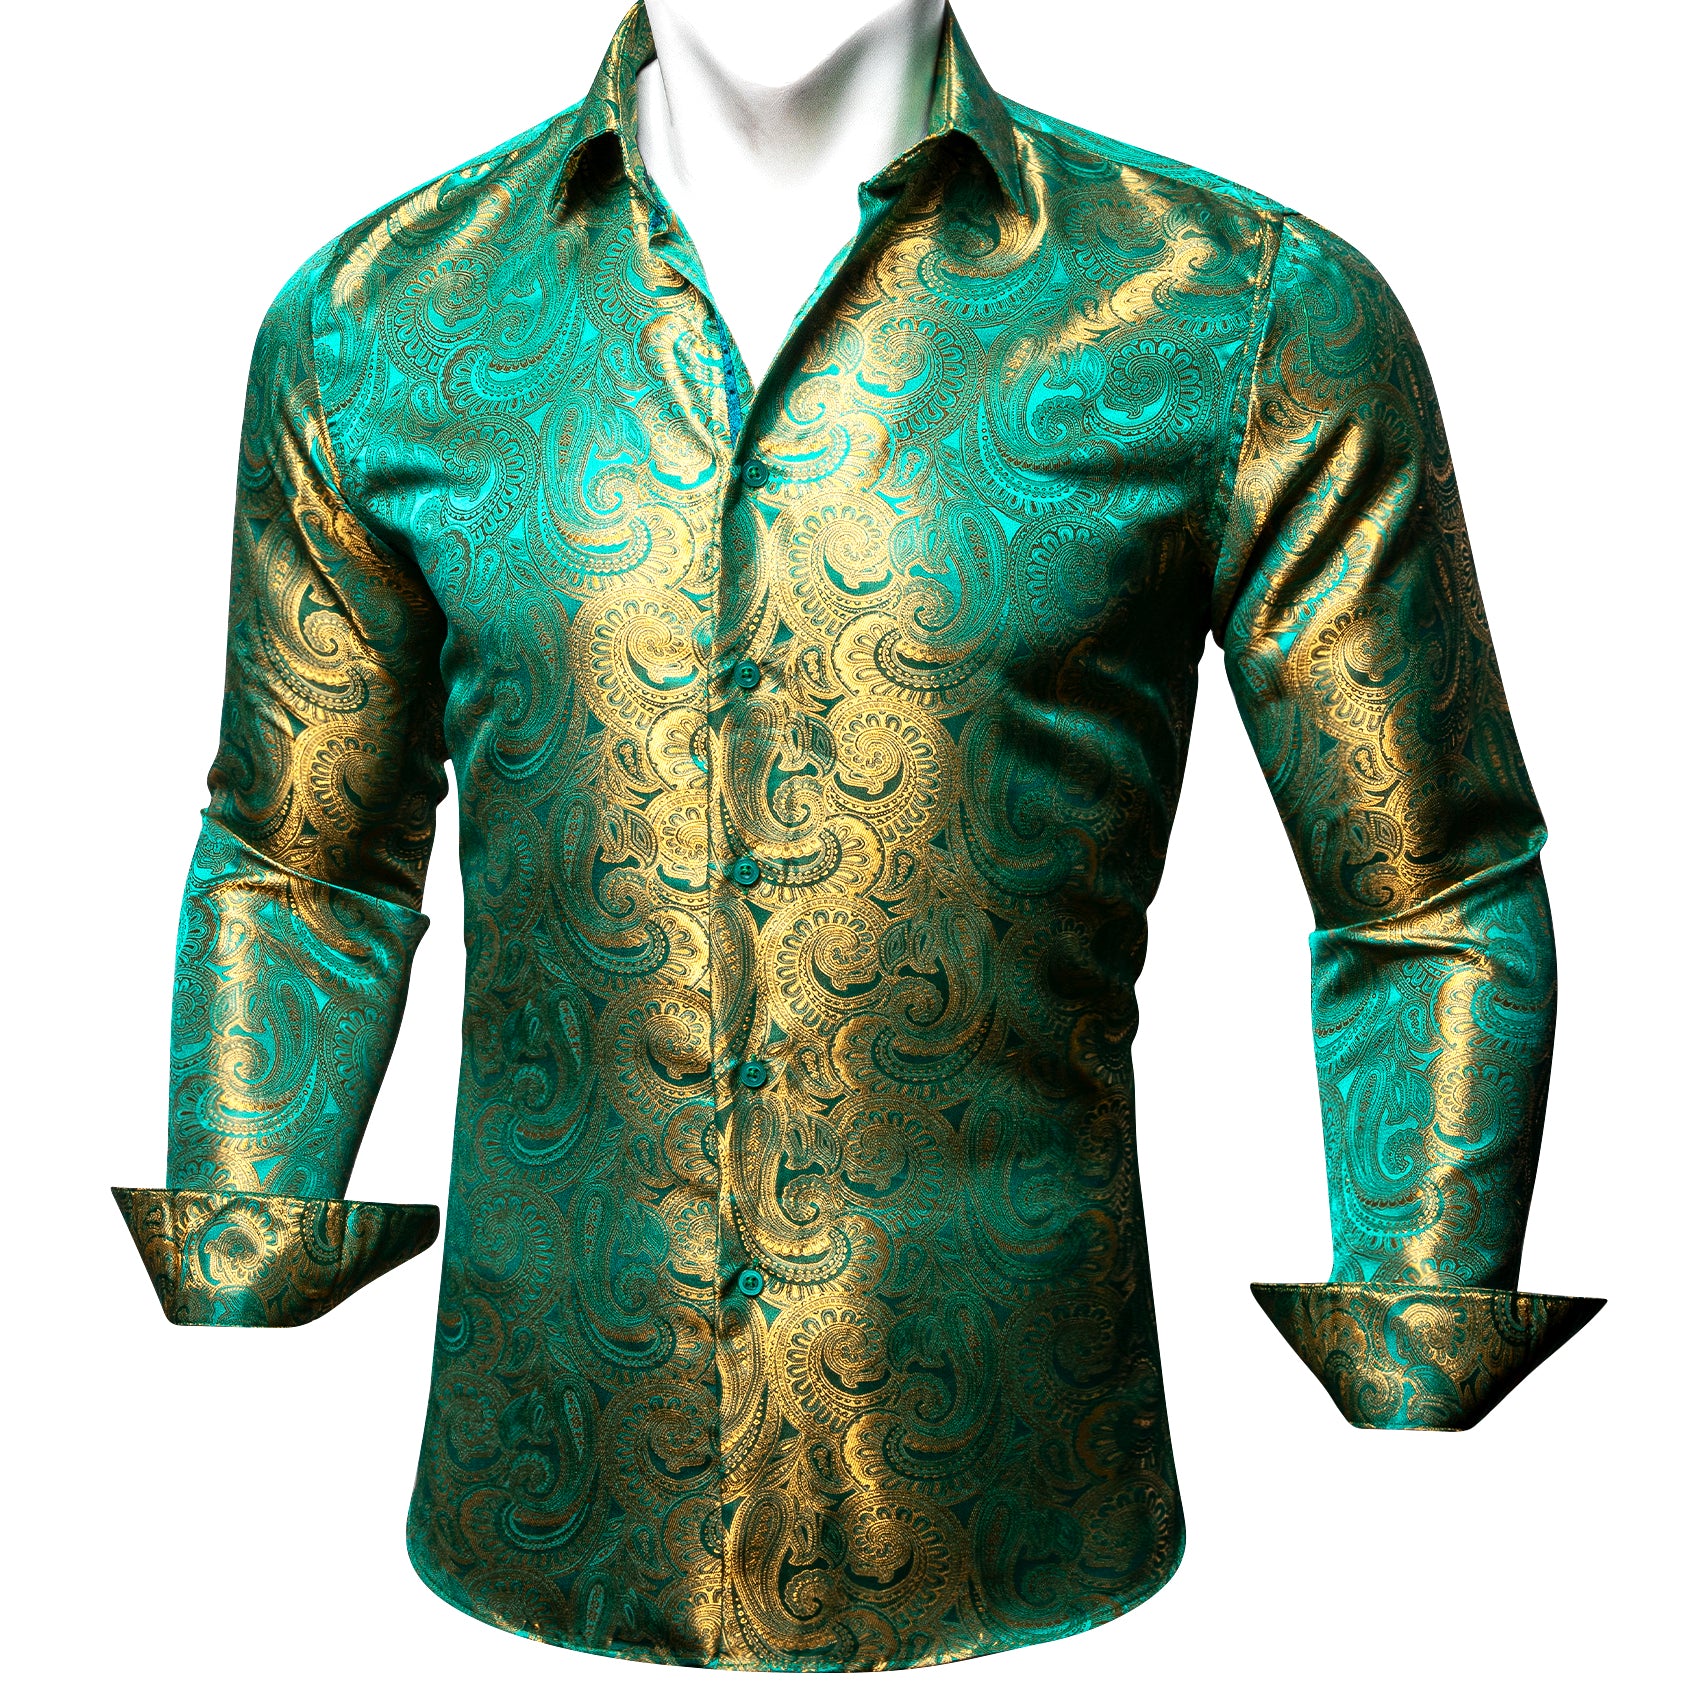 Barry.wang Green Gold Paisley Silk Men's Shirt